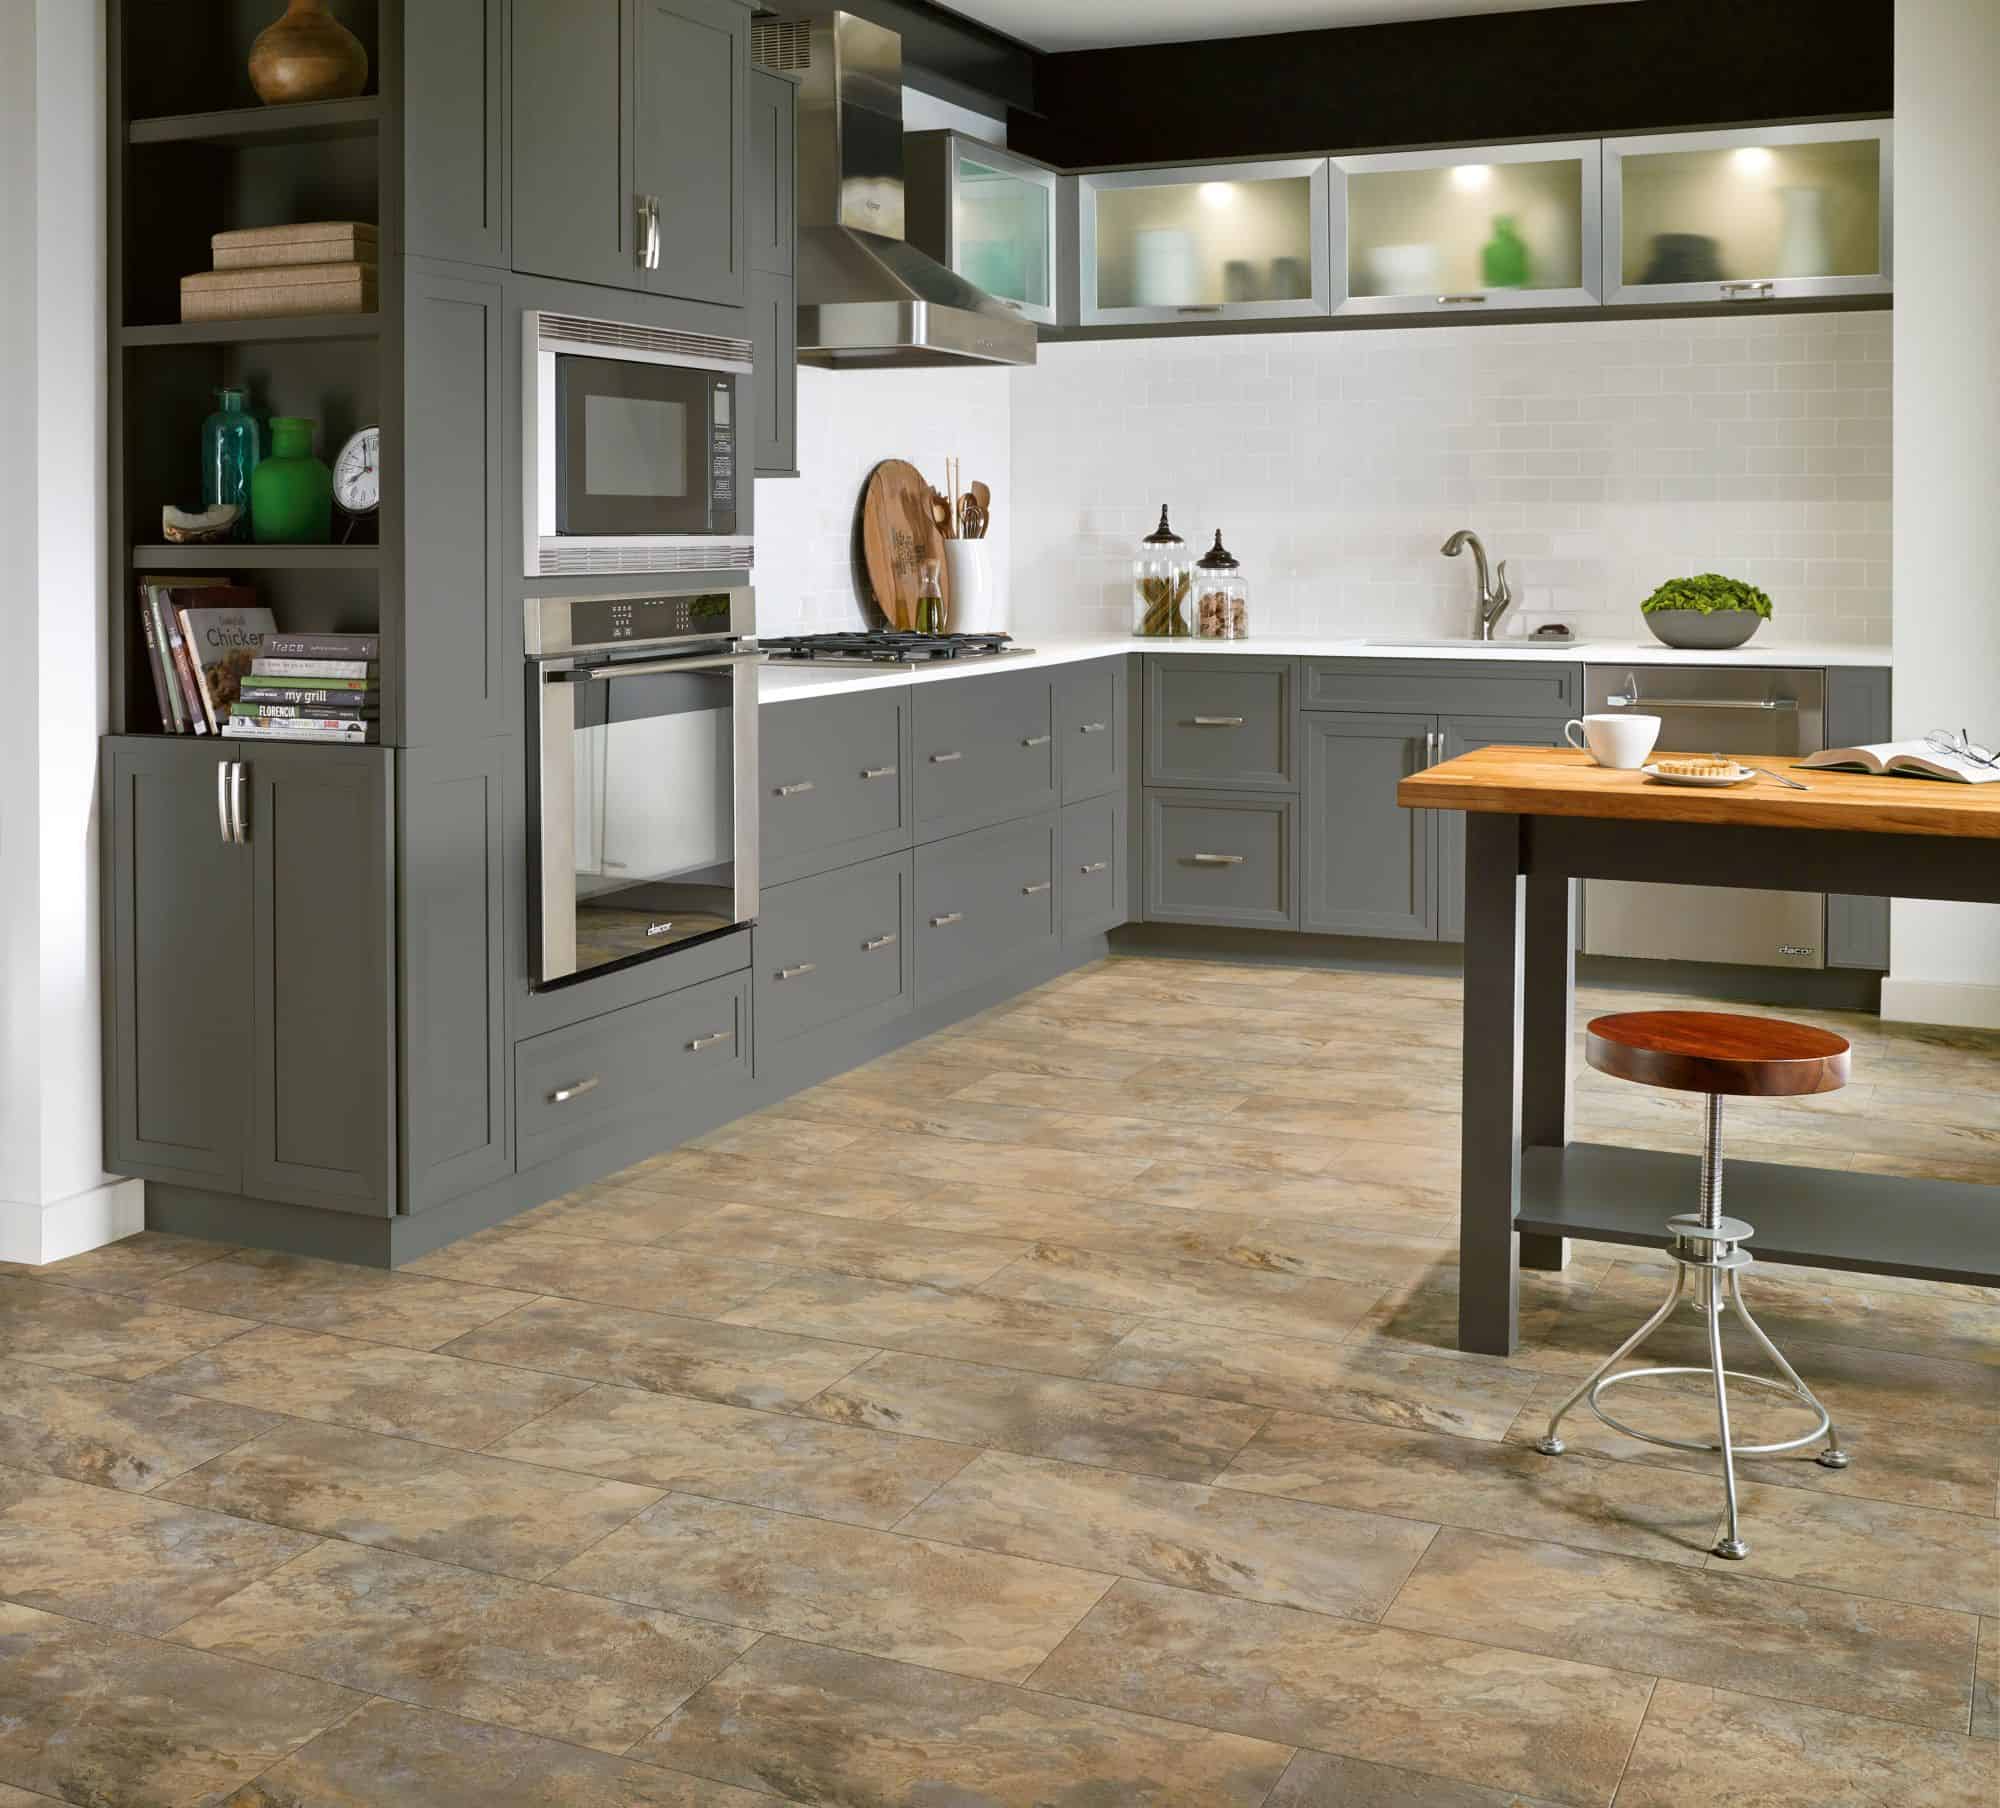 Luxury Vinyl Tile Flooring in Kitchen